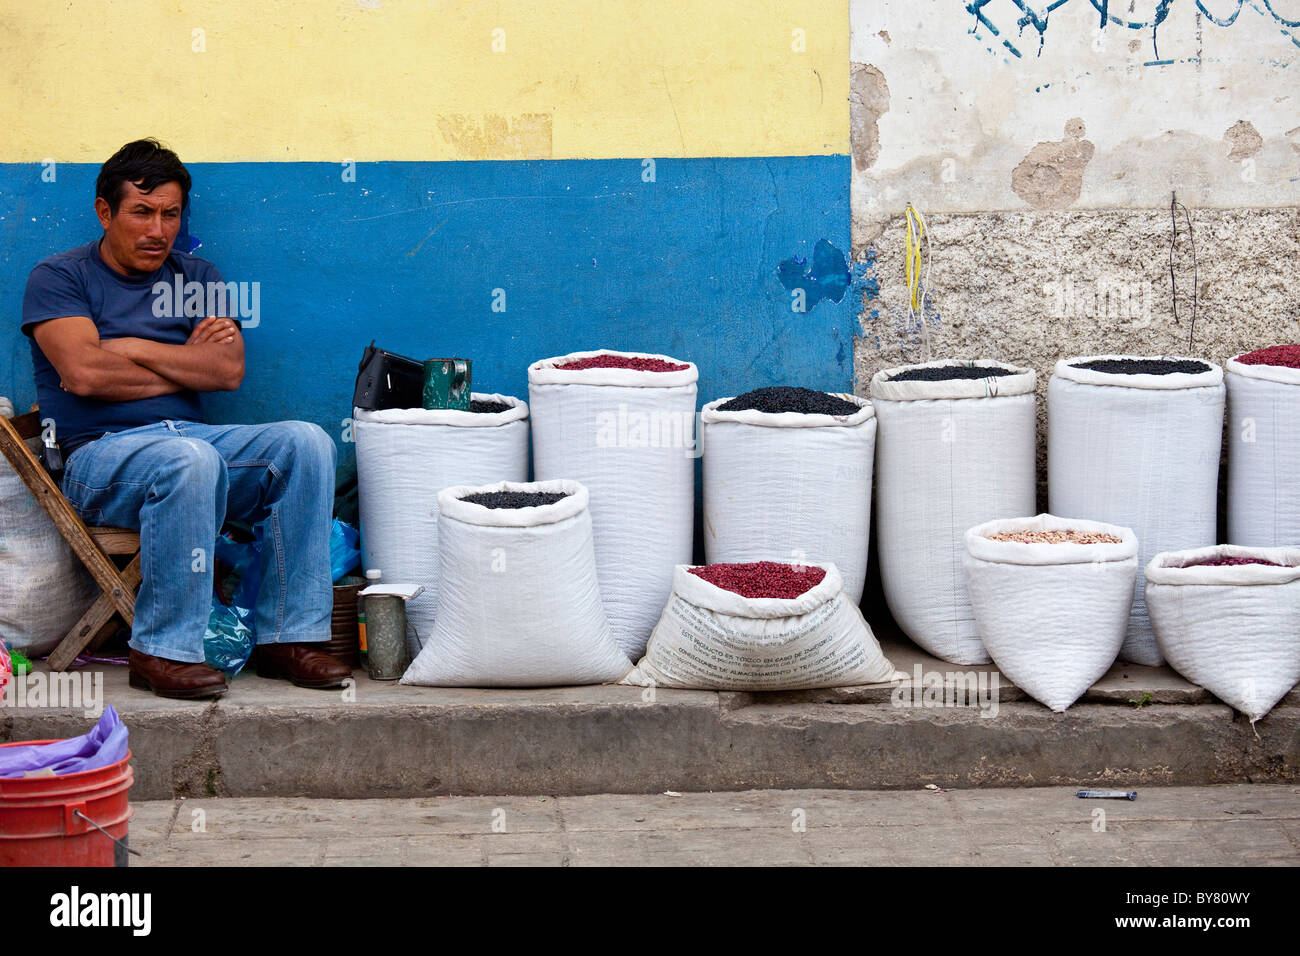 Man selling haricots, Mercado Municipal, San Cristobal de las Casas, Chiapas, Mexique Banque D'Images